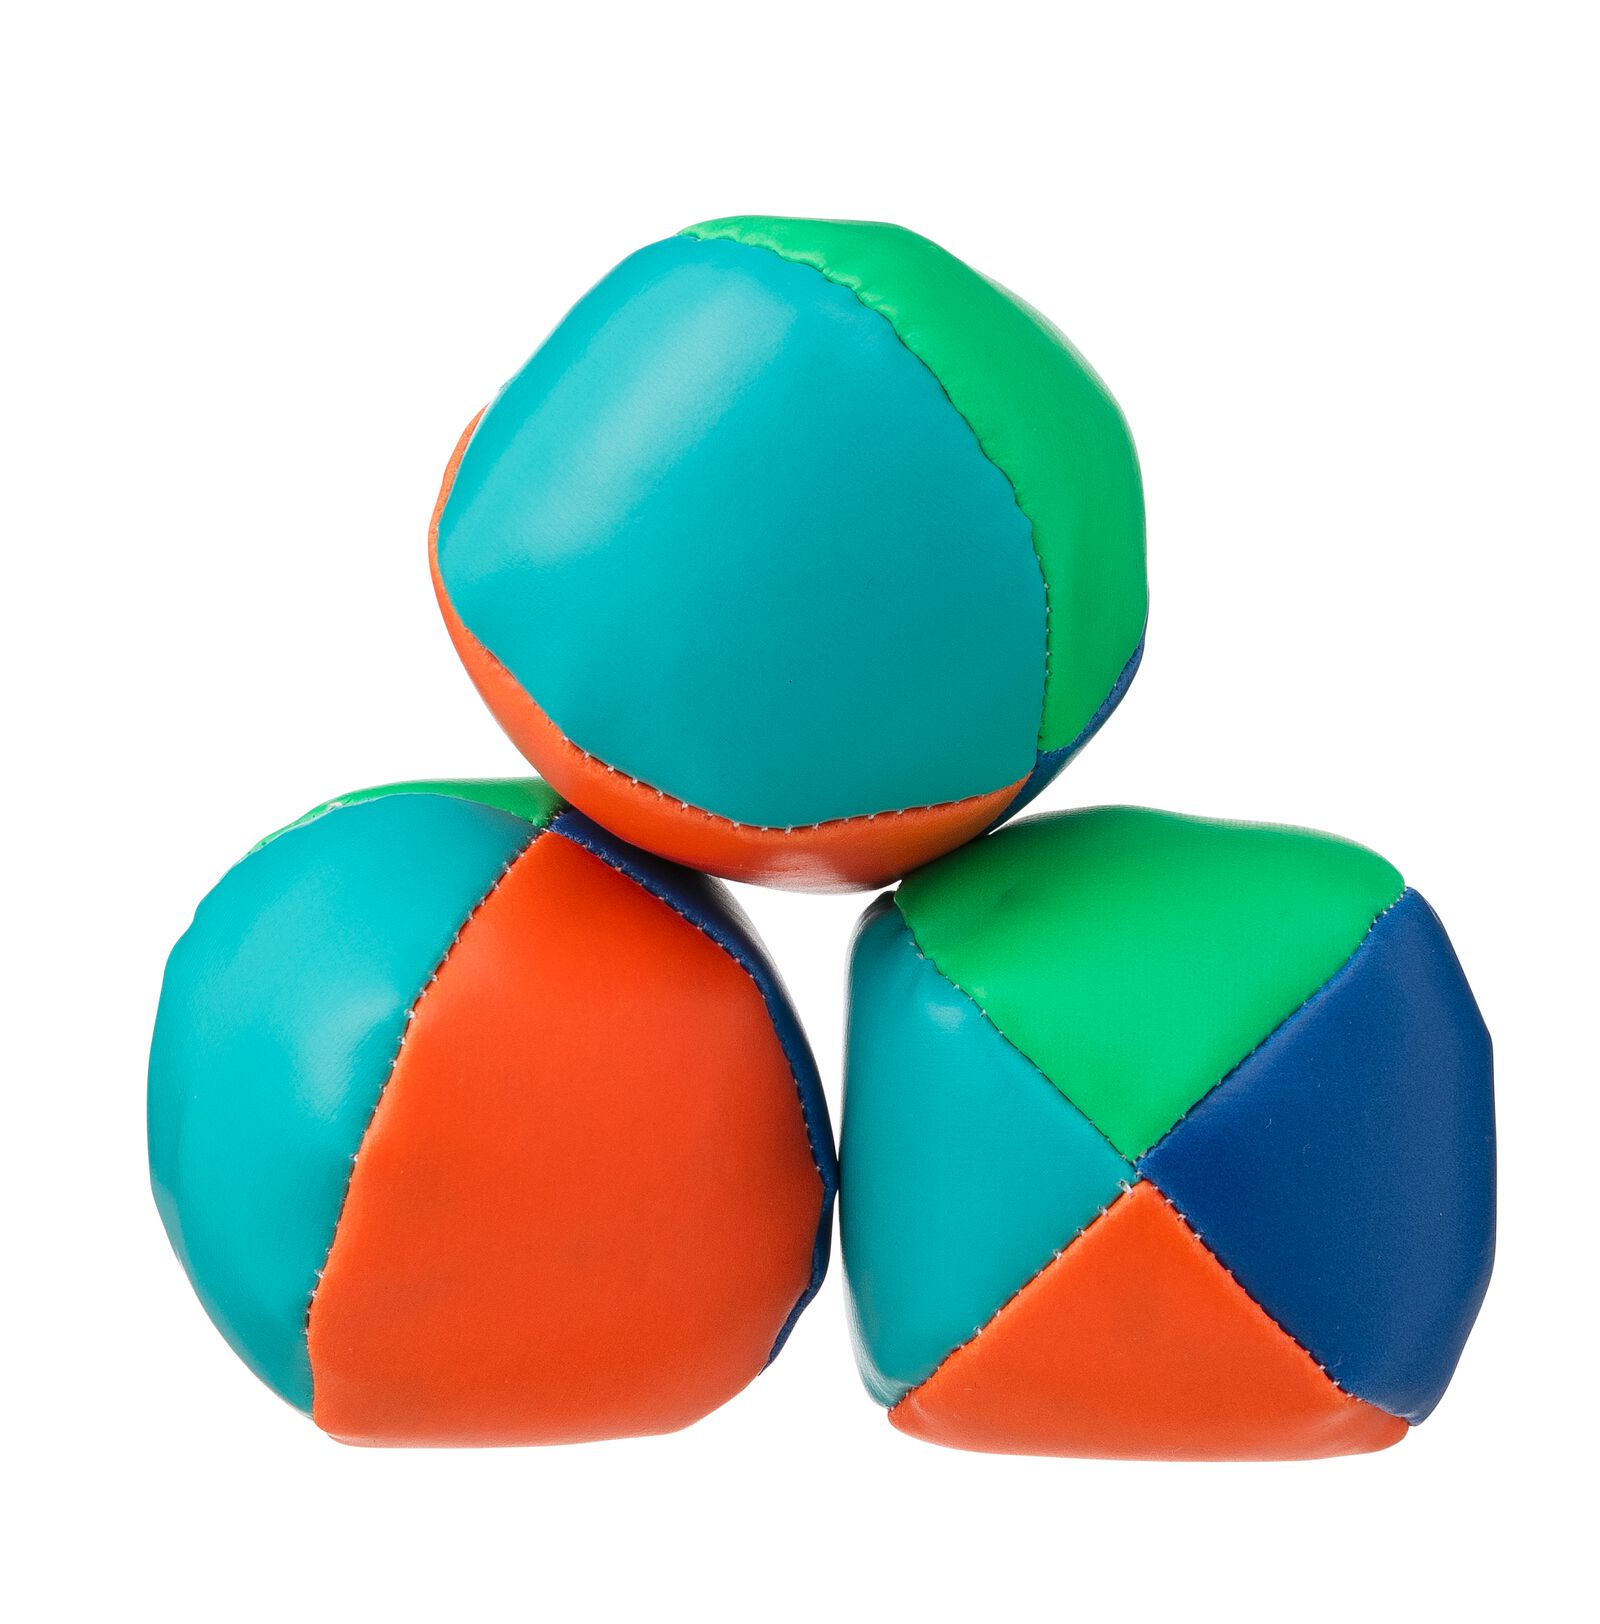 Balles de jonglage Legami chez Rougier & Plé